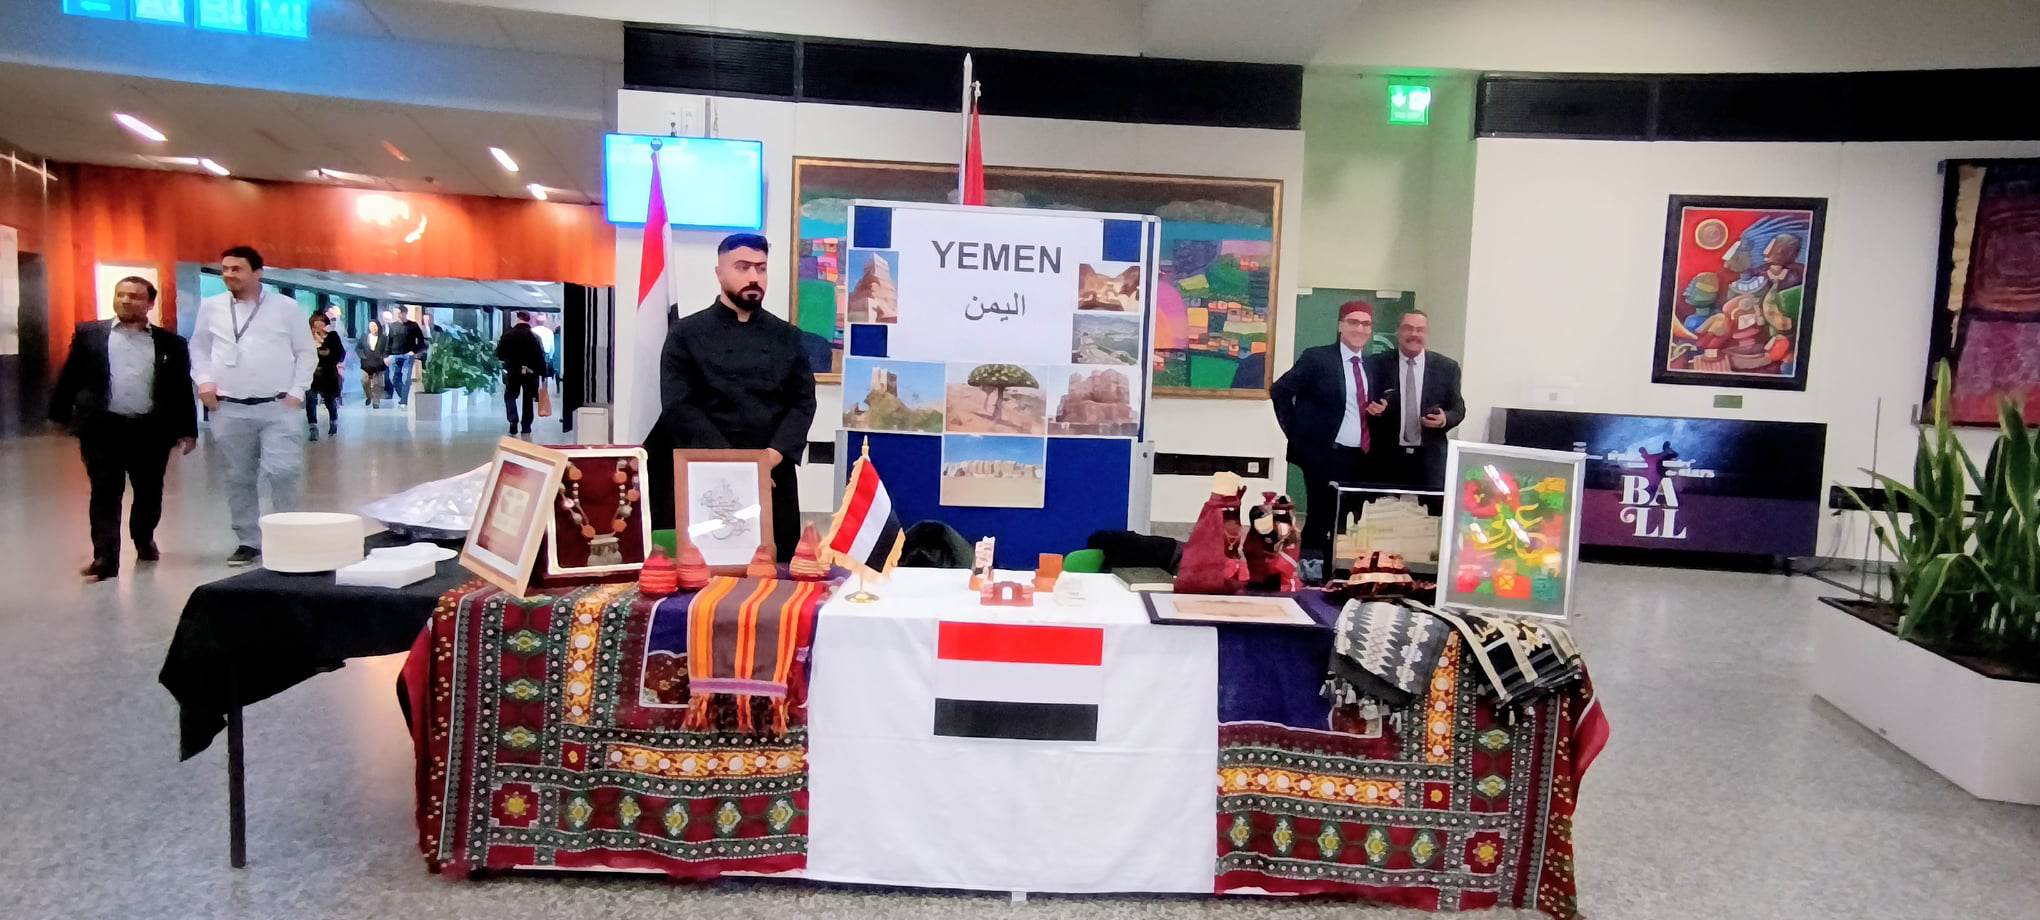 مصر تشارك بإرثها الثقافي في احتفالات اليوم العالمي للغة العربية بالنمسا